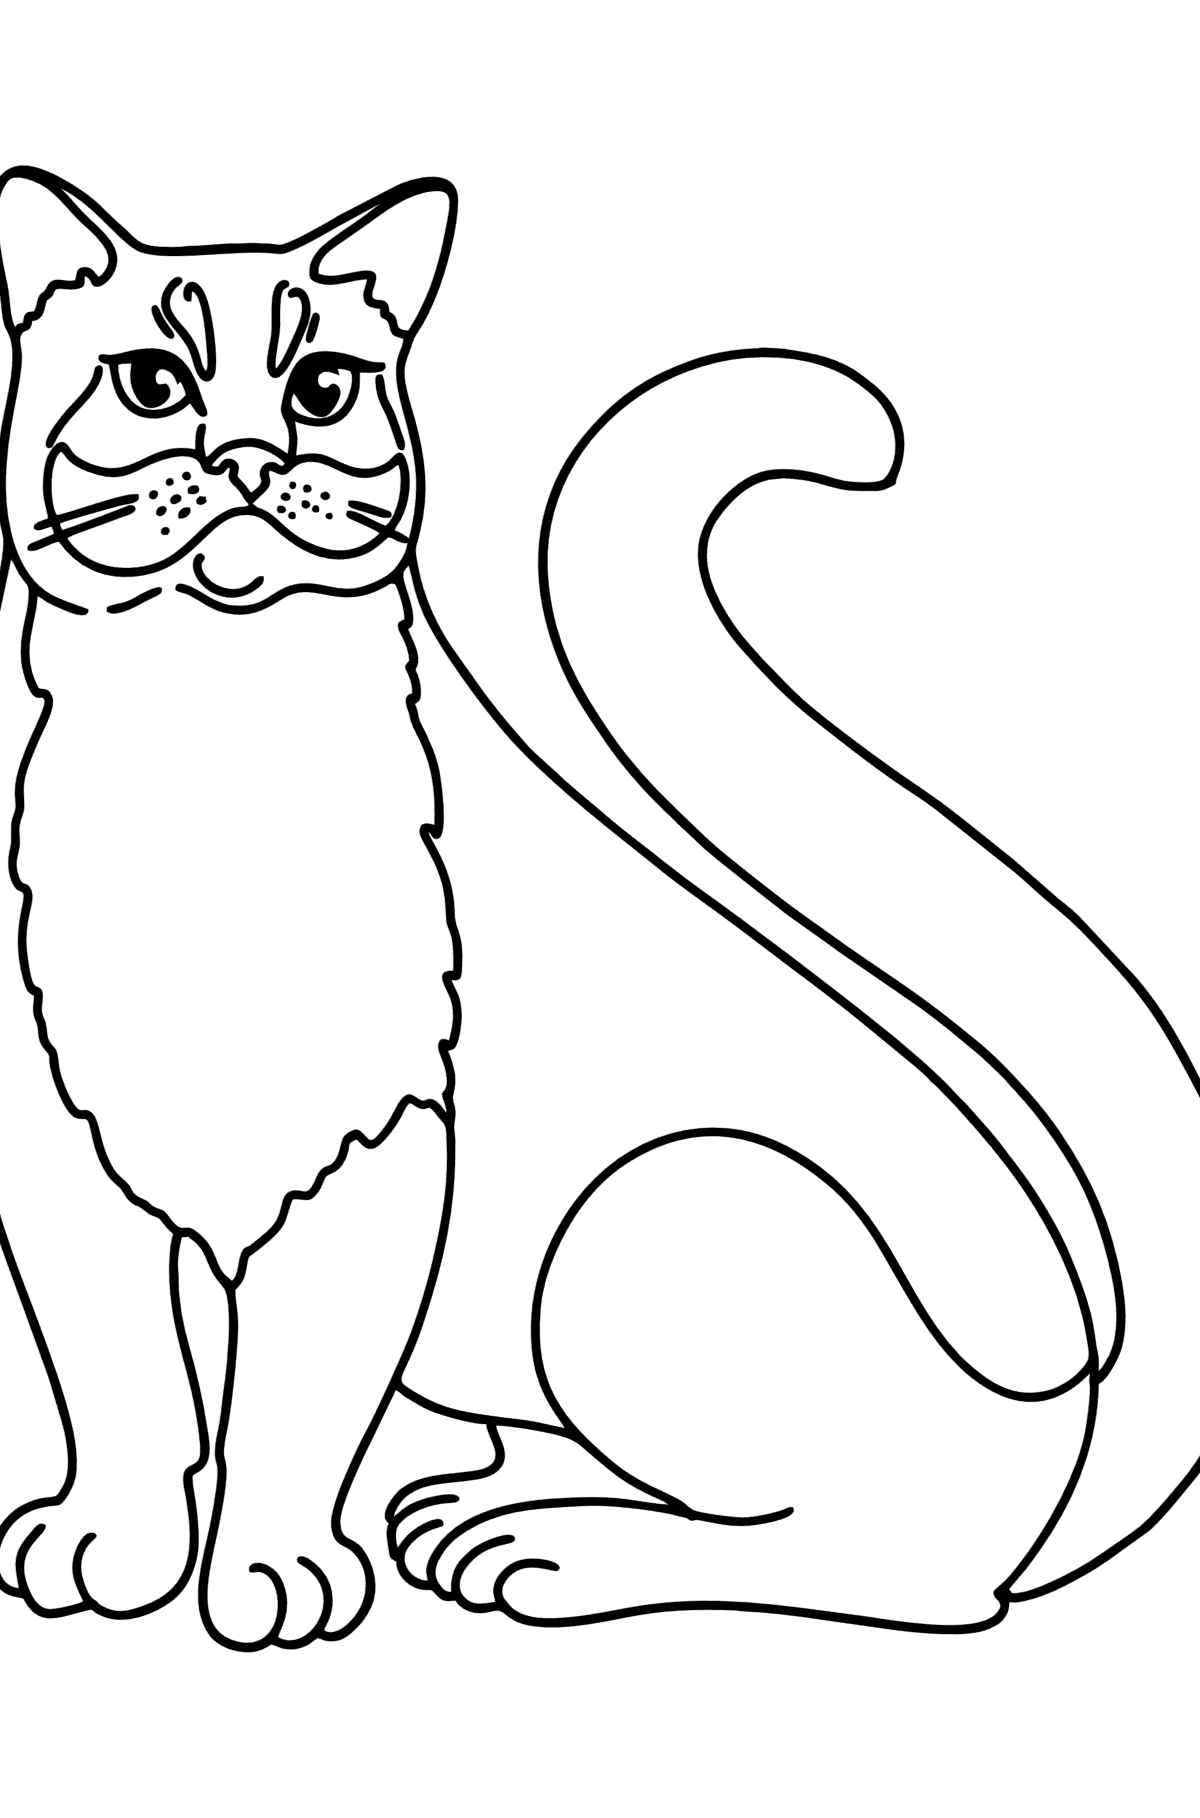 Boyama sayfası rus mavi kedi - Boyamalar çocuklar için